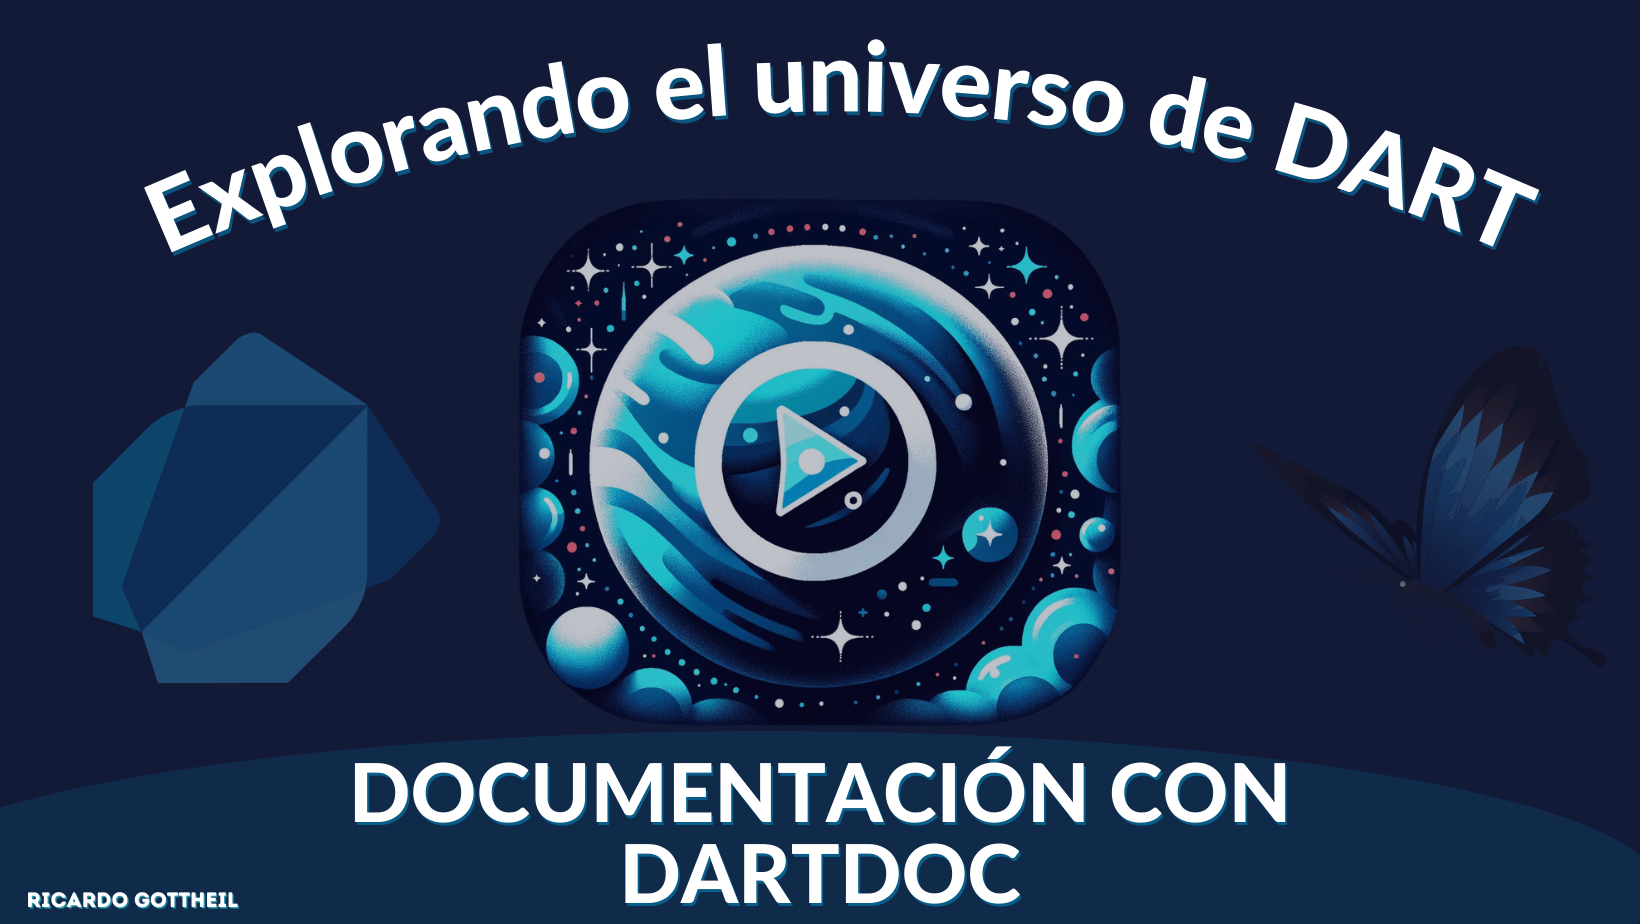 Portada - Explorando el universo de dart - Documentación con Dartdoc 